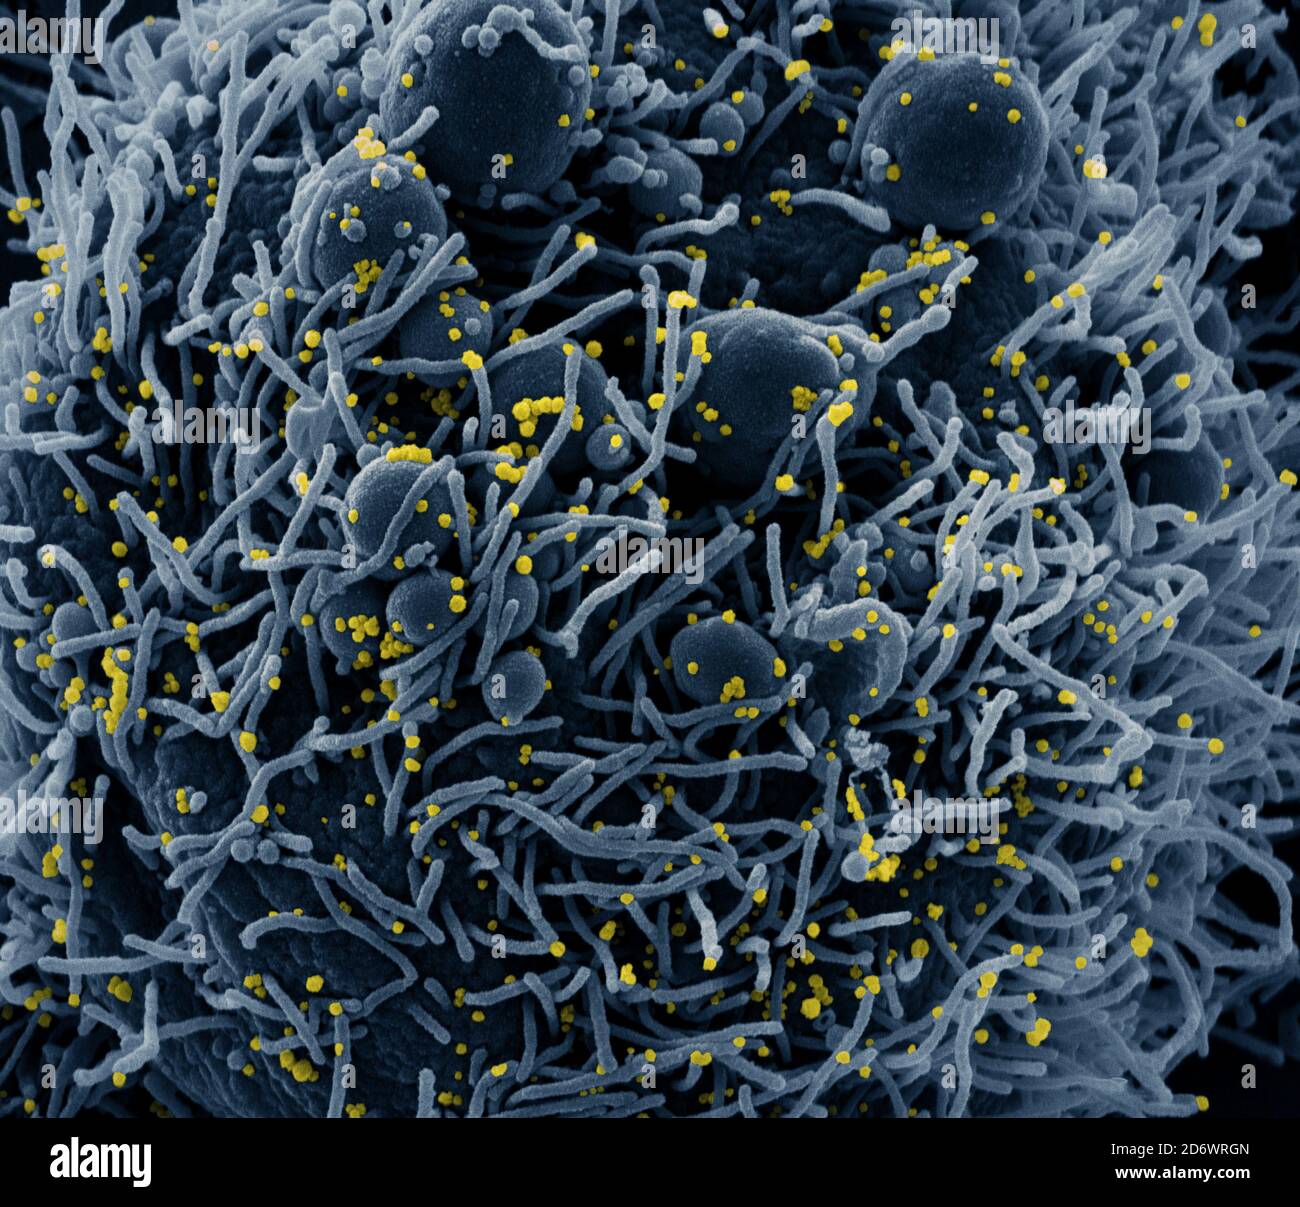 Micrografía electrónica de exploración coloreada de una célula apoptótica (azul) infectada con partículas del virus SARS-COV-2 (amarillo), aislada de una muestra de paciente. Foto de stock